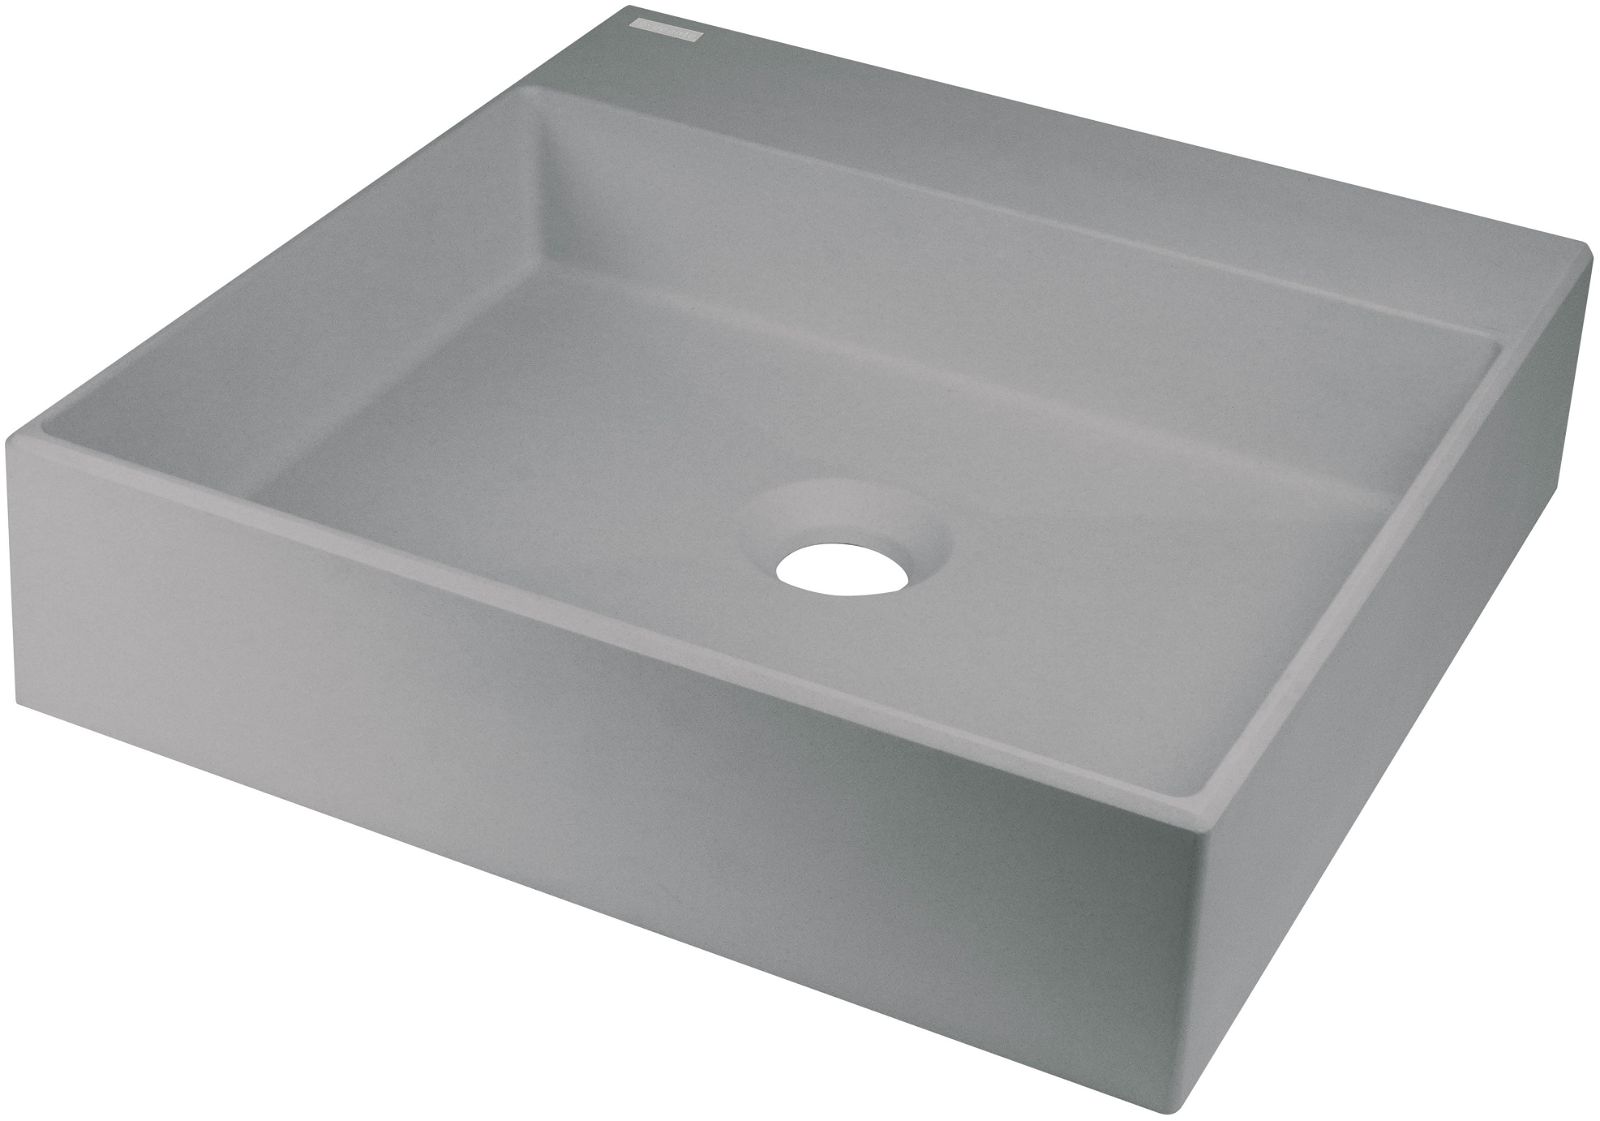 Granite washbasin, countertop - 400x400 mm - CQR_SU4S - Główne zdjęcie produktowe